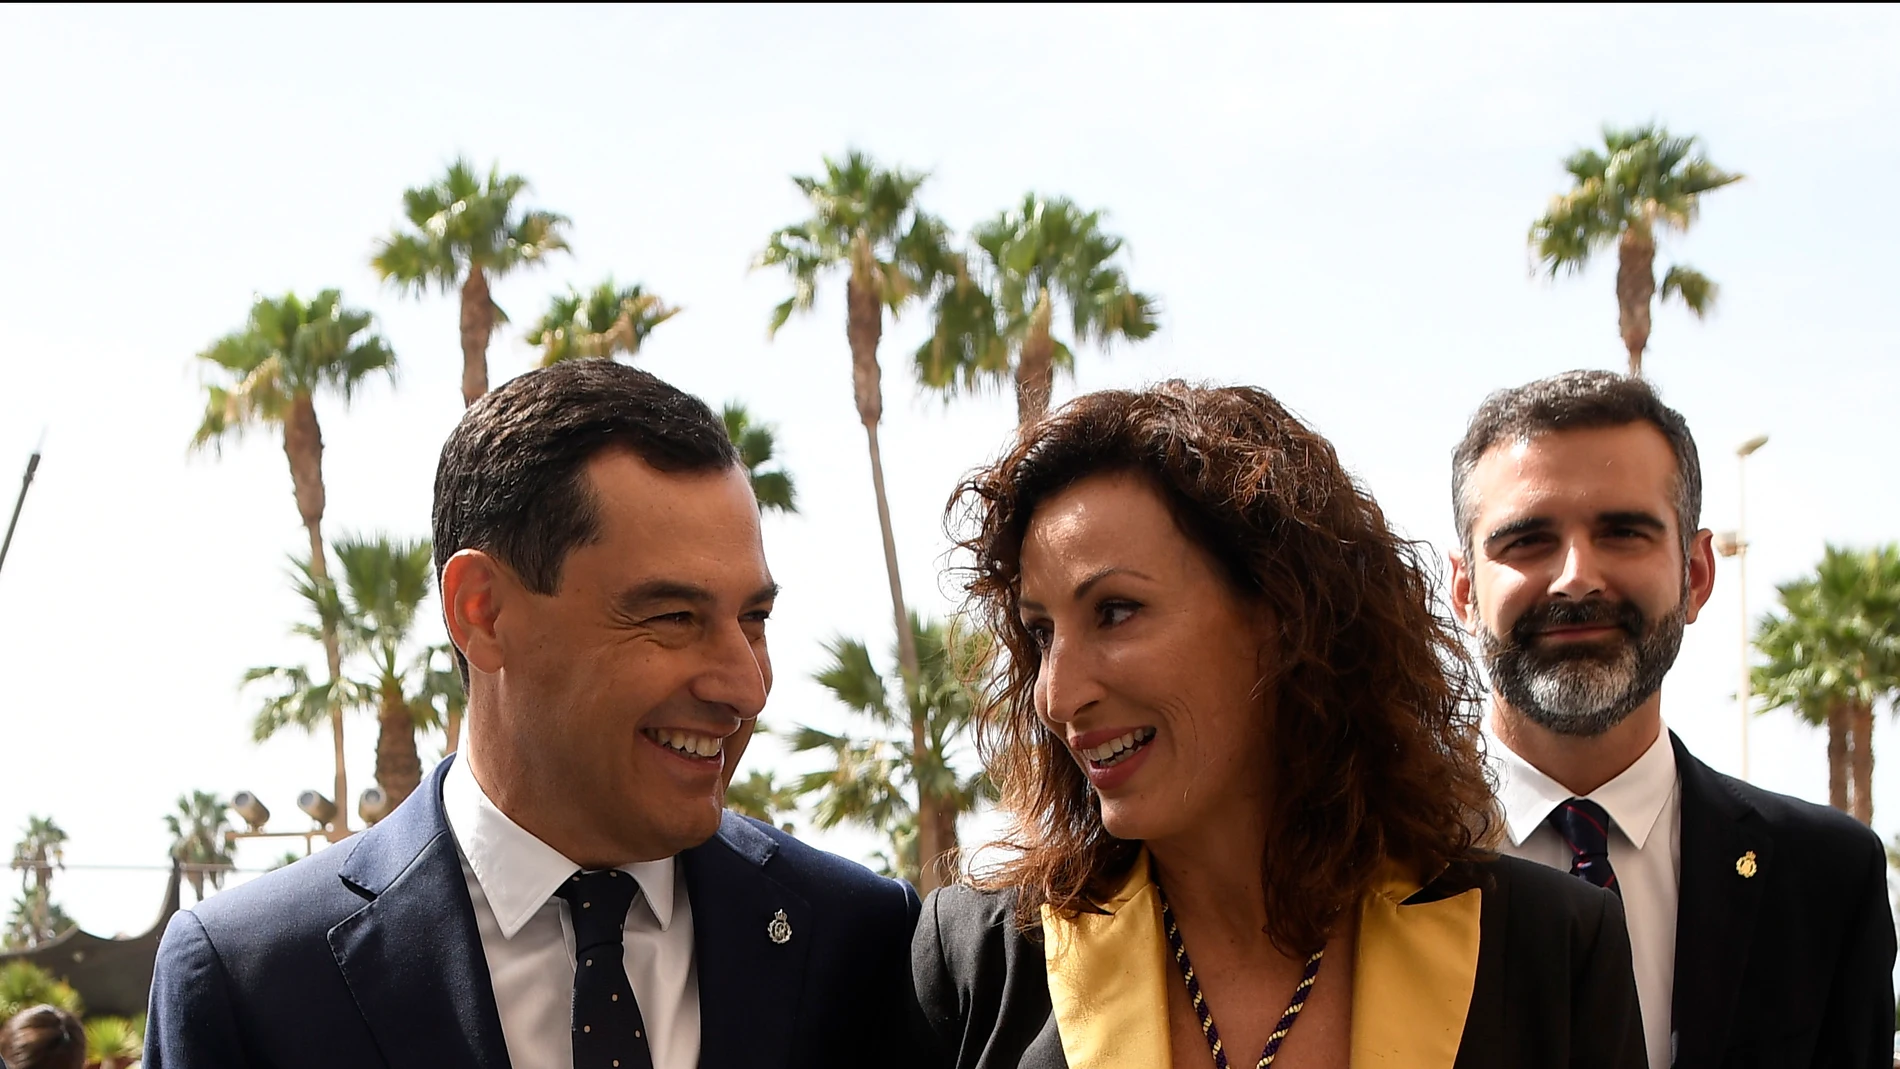 El presidente de la Junta de Andalucía, Juanma Moreno (d), junto a María del Mar Vázquez (i), momentos antes del acto de investidura como nueva alcaldesa de Almería. EFE / Carlos Barba